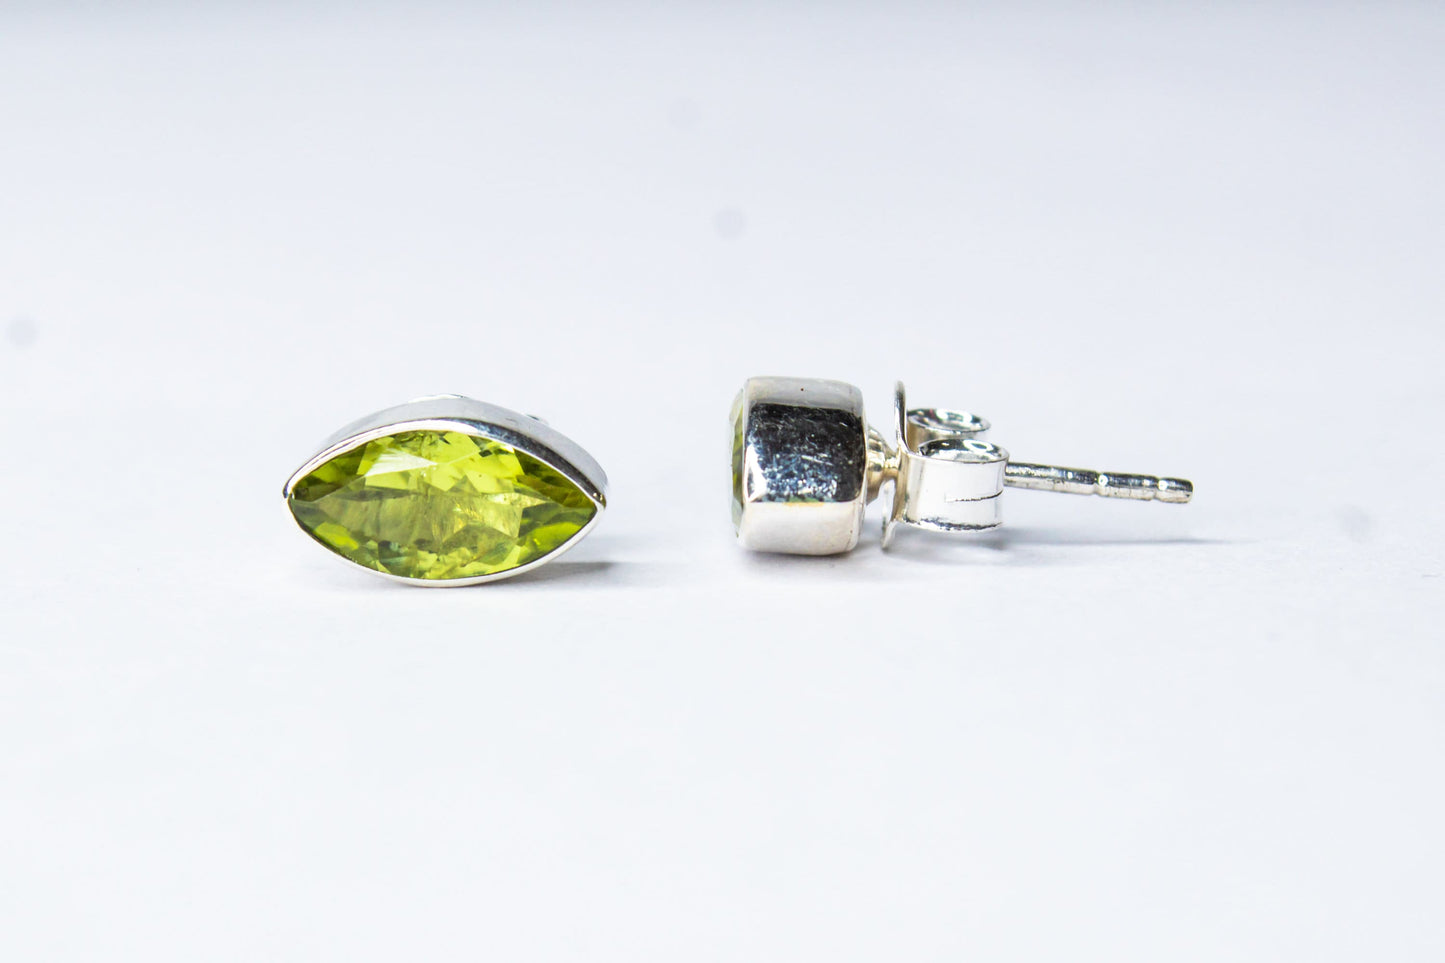 Genuine PERIDOT Gemstones Solid 925 Sterling SILVER Simple Leaf Shaped Stud Earrings, Olive Green Peridot Stud Earrings, Australia, Zorbajewellers